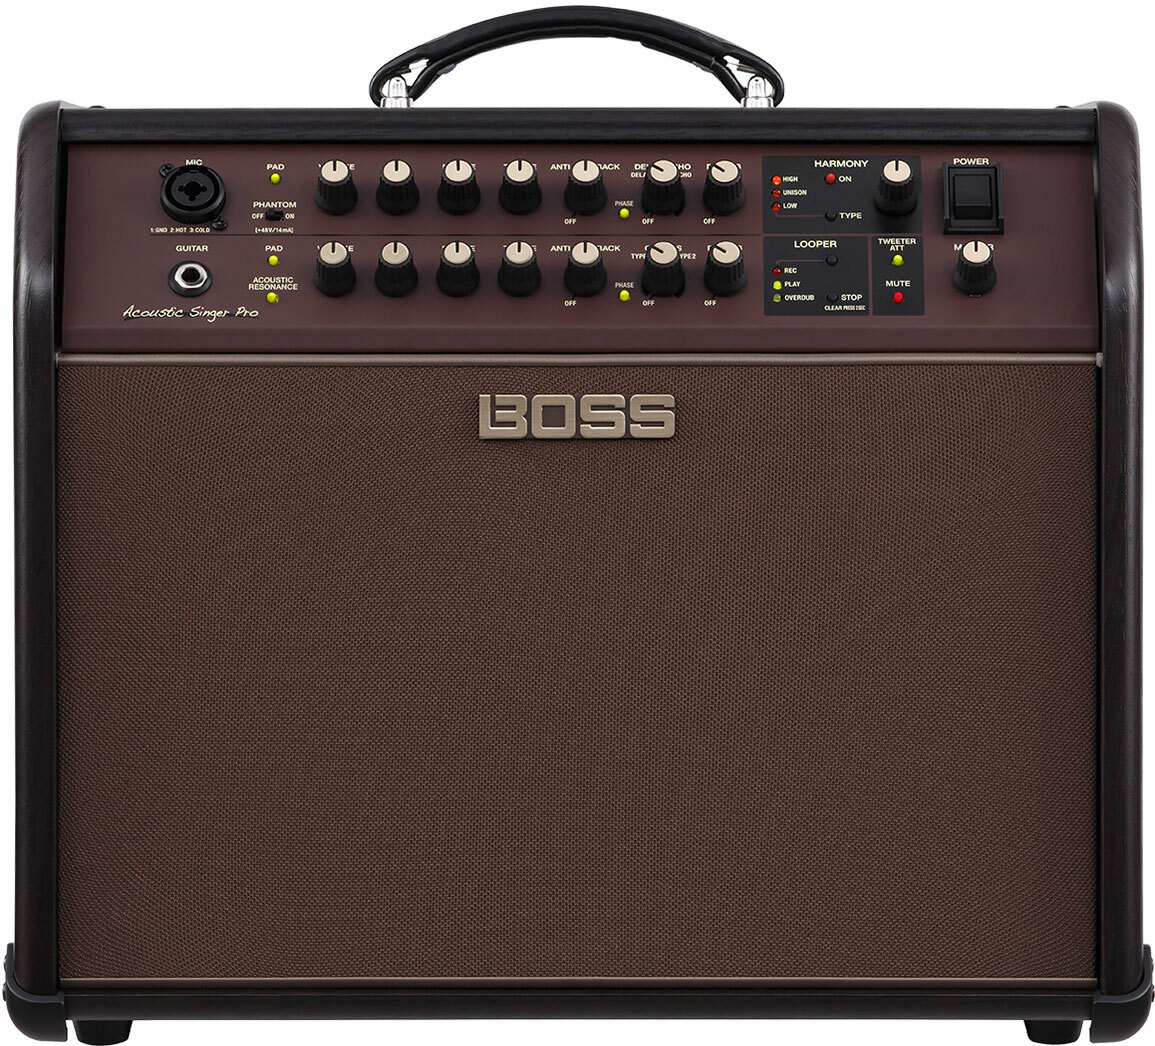 Boss Acoustic Singer Pro 120w 1x8 - Combo Ampli Acoustique - Main picture